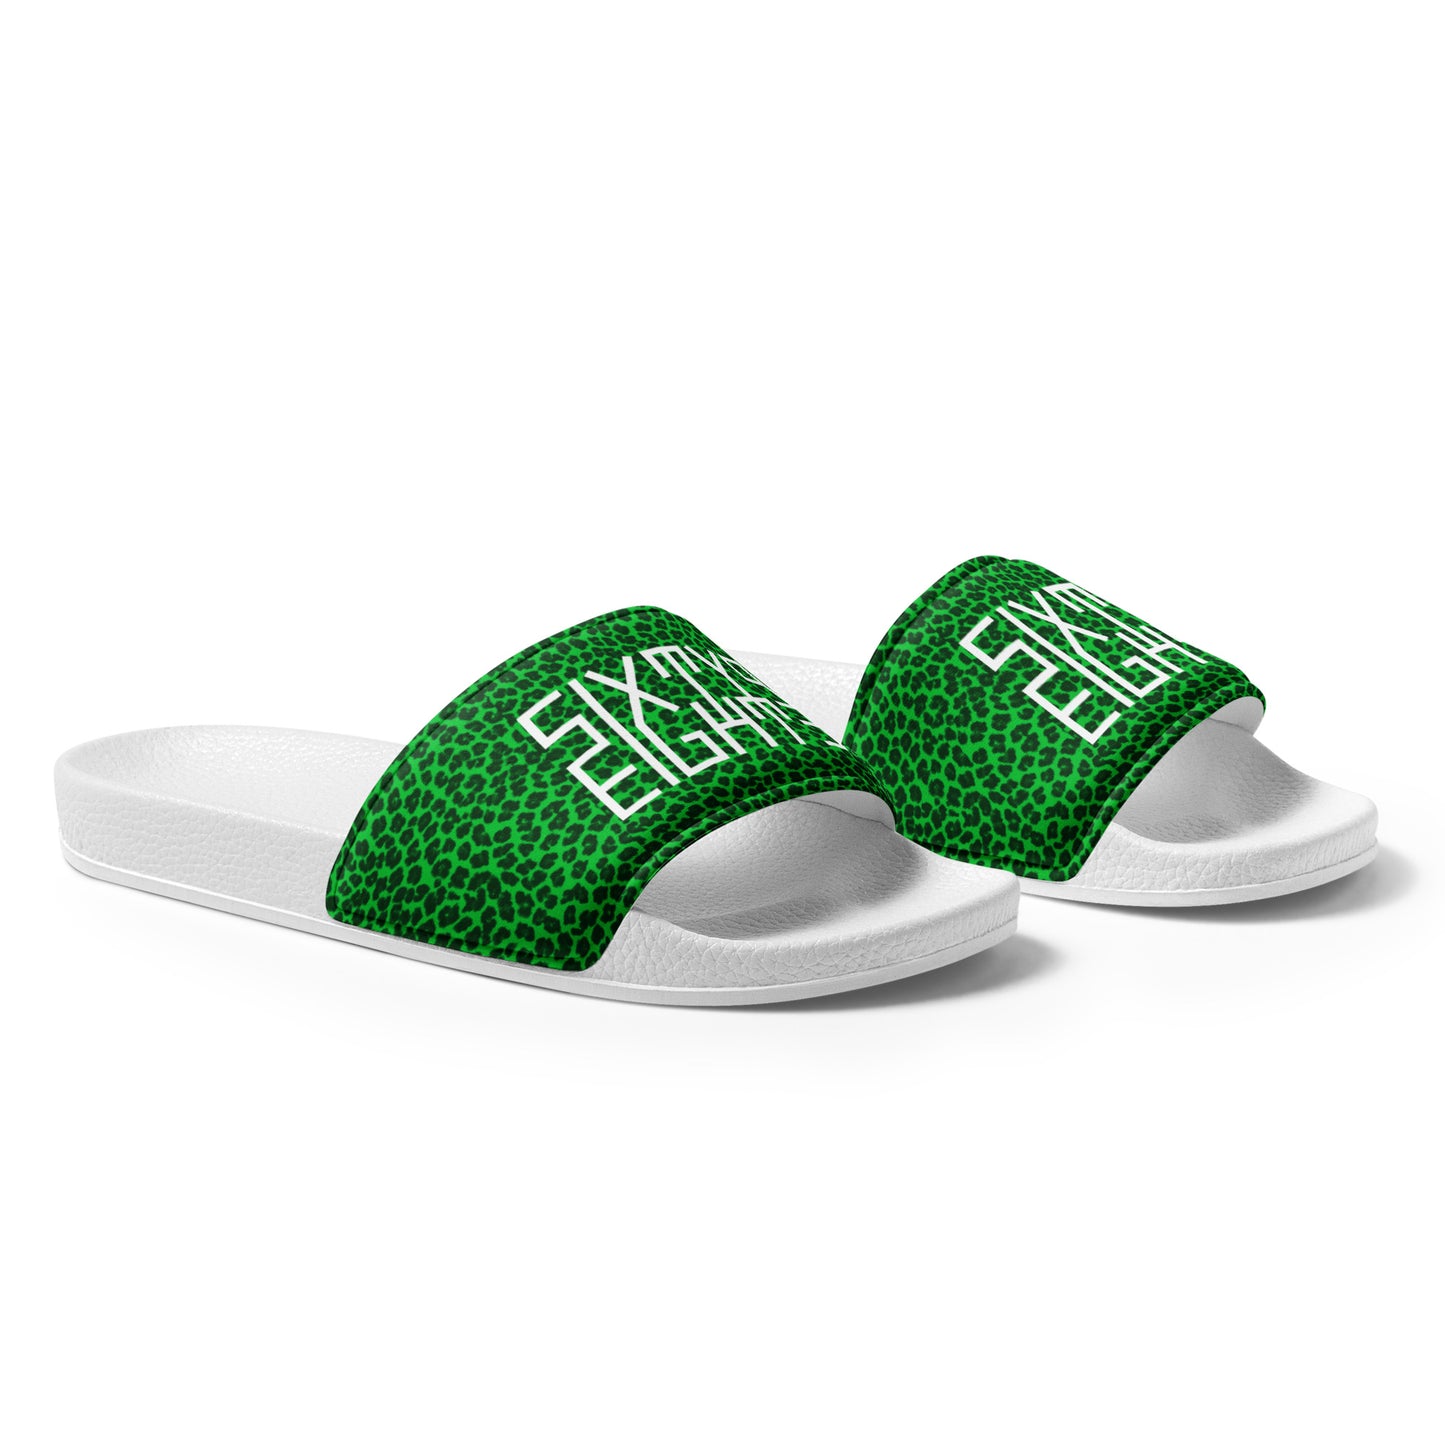 Sixty Eight 93 Logo White Cheetah Lime Green Women's Slides